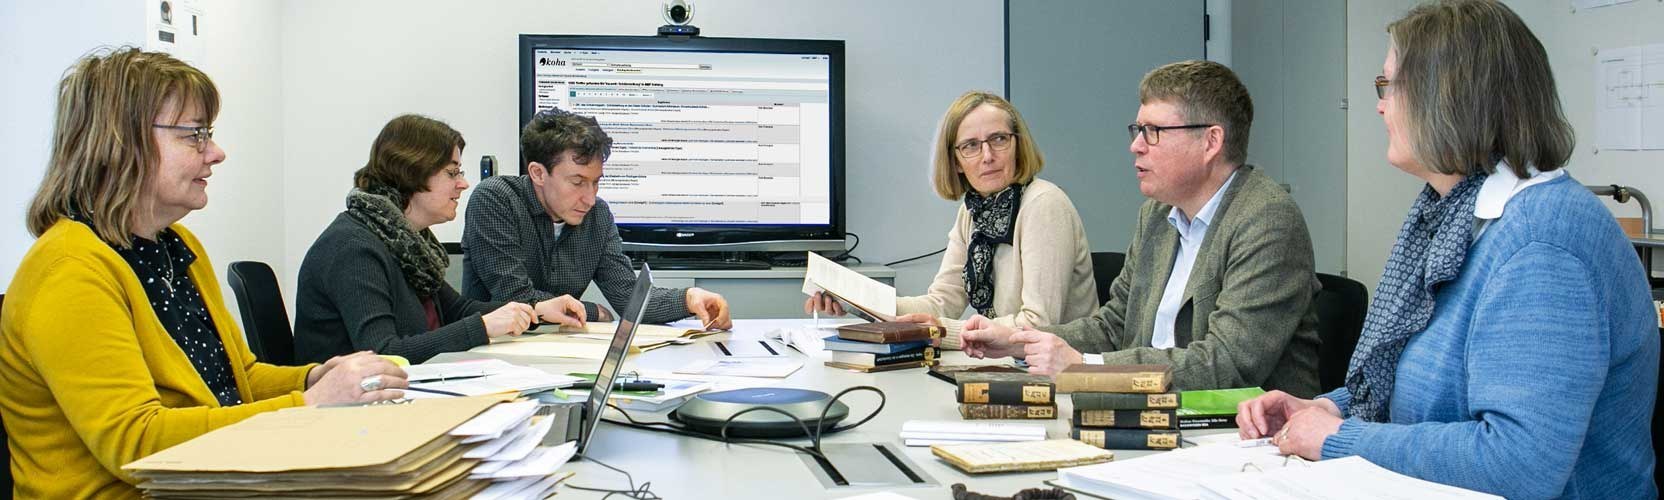 Team aus der BBF bei der Besprechung am Tisch im Hintergrund großer Bildschirm mit dem Bibliothekskatalog